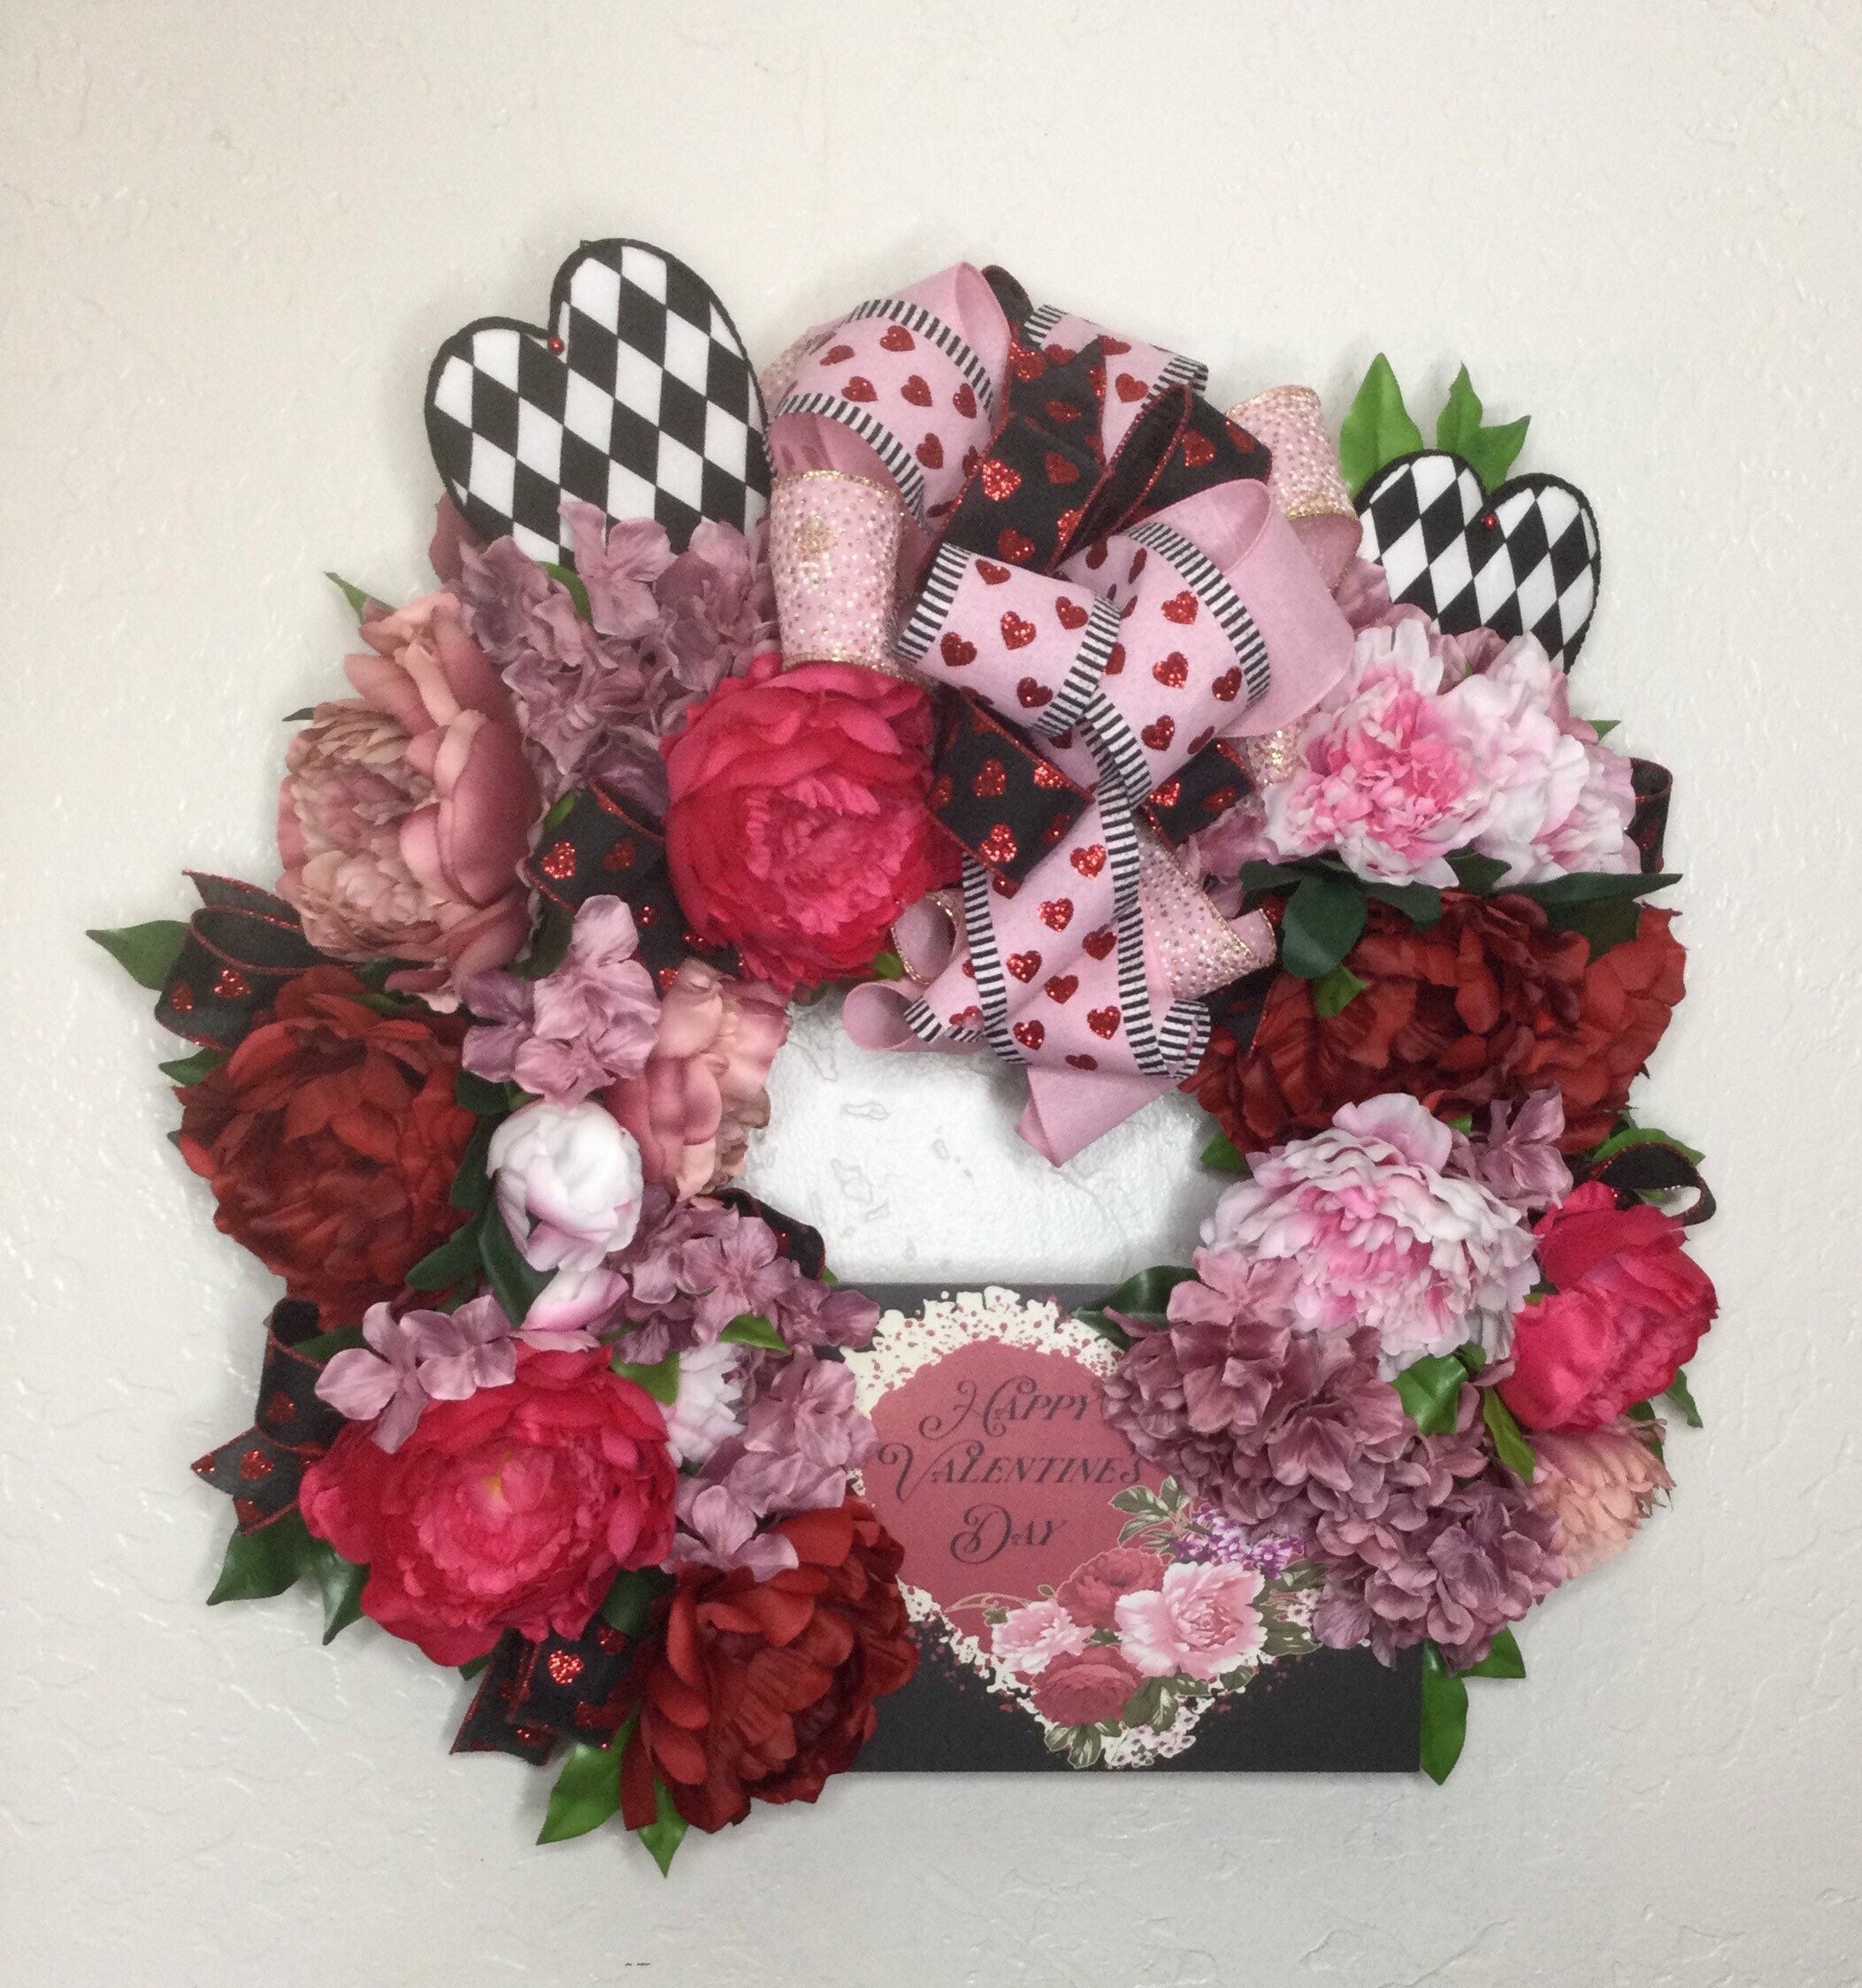 15 Valentines Wreath Ideas – Beautiful DIY Valentine Wreaths